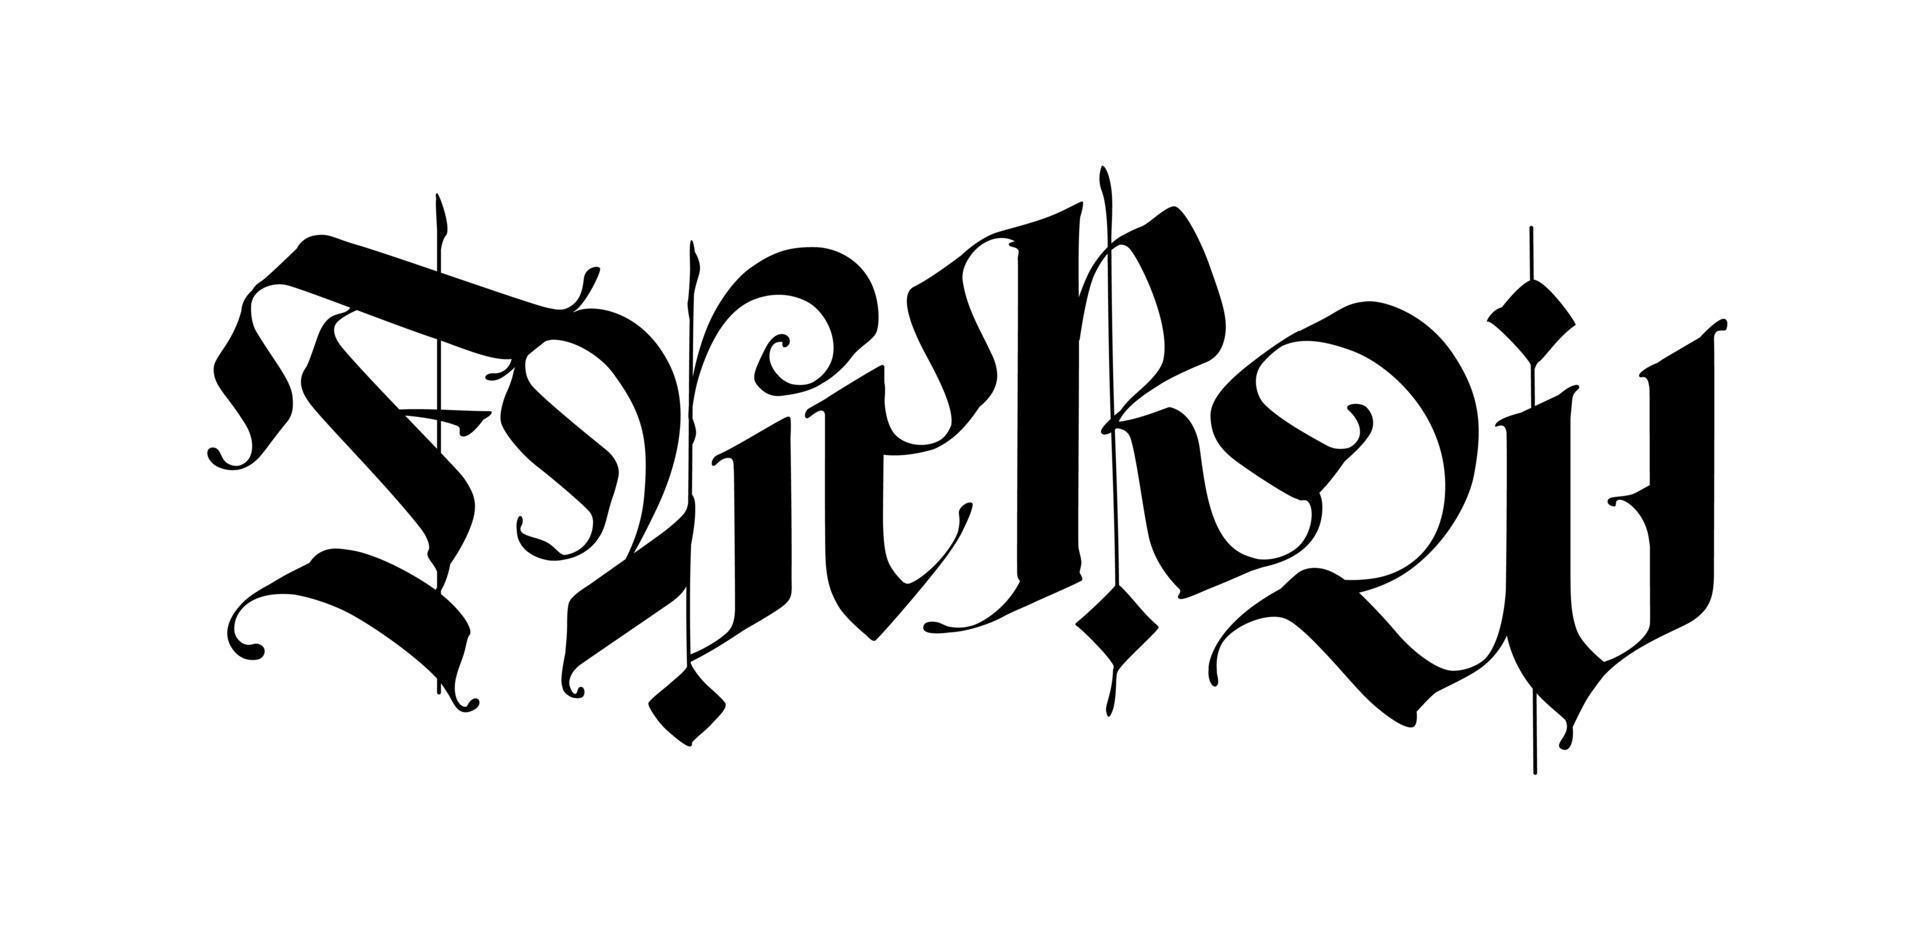 f, m, r, w i gotisk stil. vektor. bokstäver och symboler på en vit bakgrund. kalligrafi med svart markering. medeltida latinska bokstäver. elegant typsnitt för tatueringar. gammal germansk stil. vektor